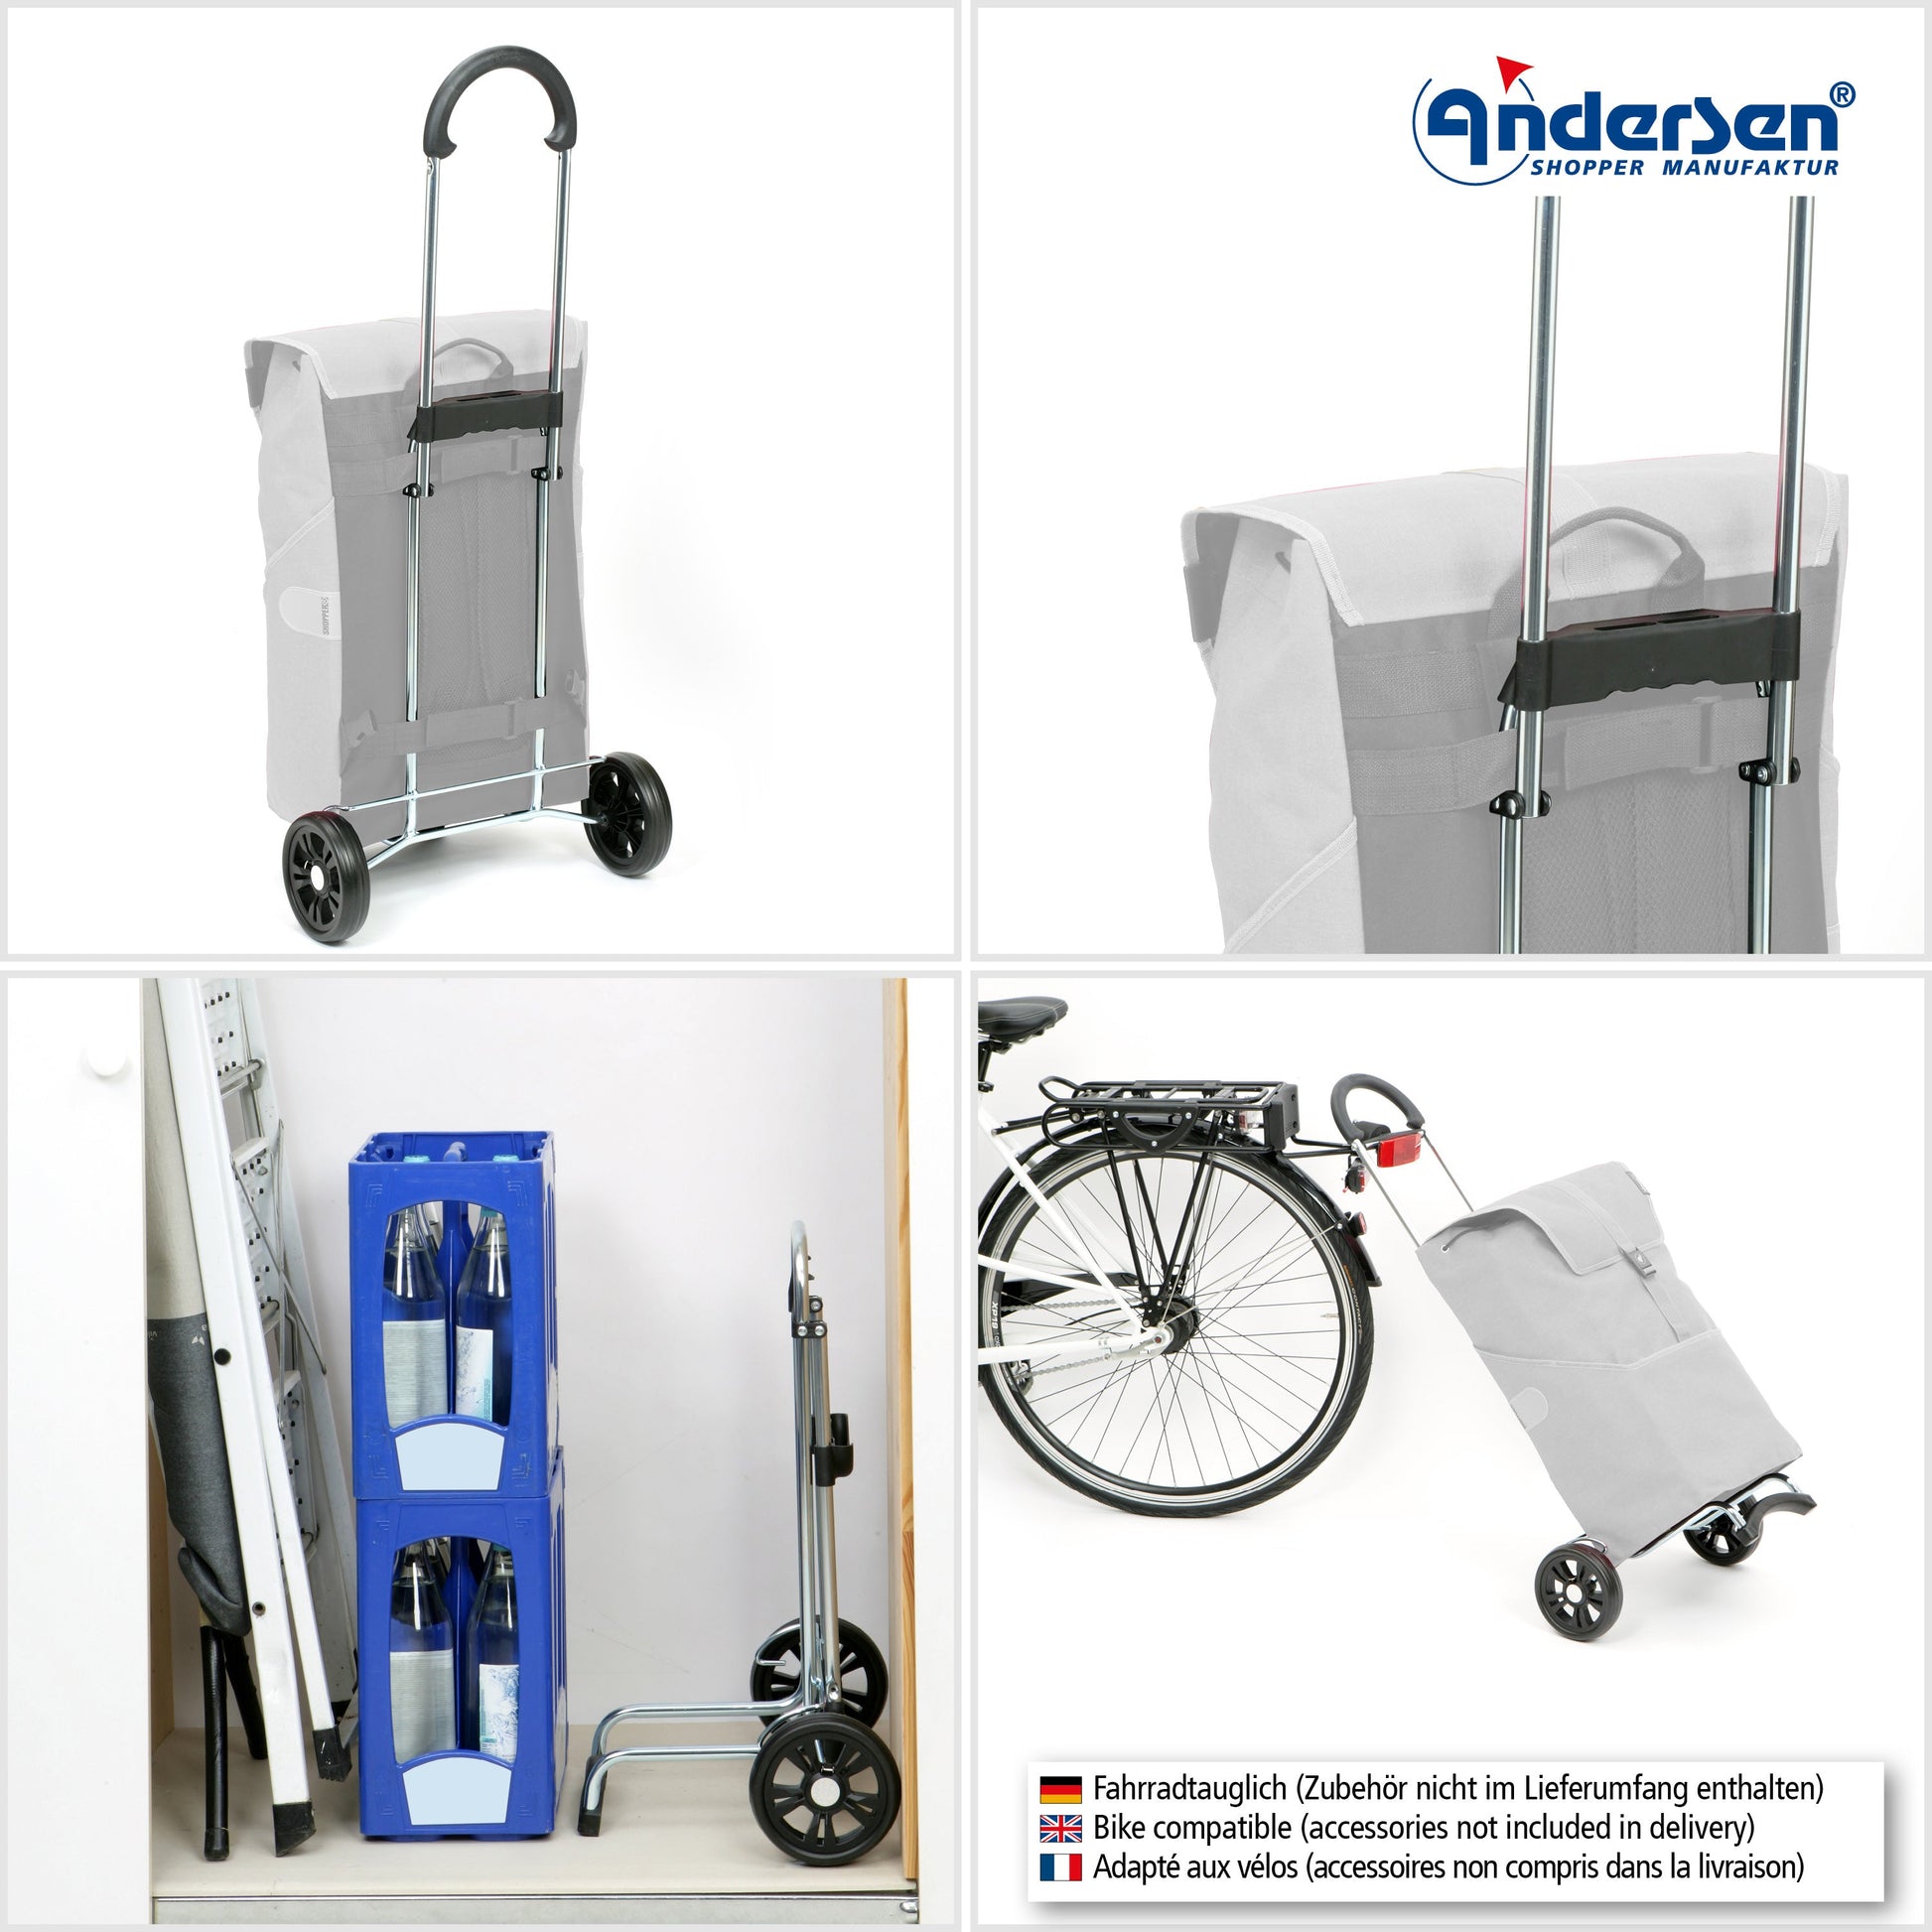 Andersen Shopper Manufaktur-Scala Shopper Weda blau-www.shopping-trolley.ch-bild4